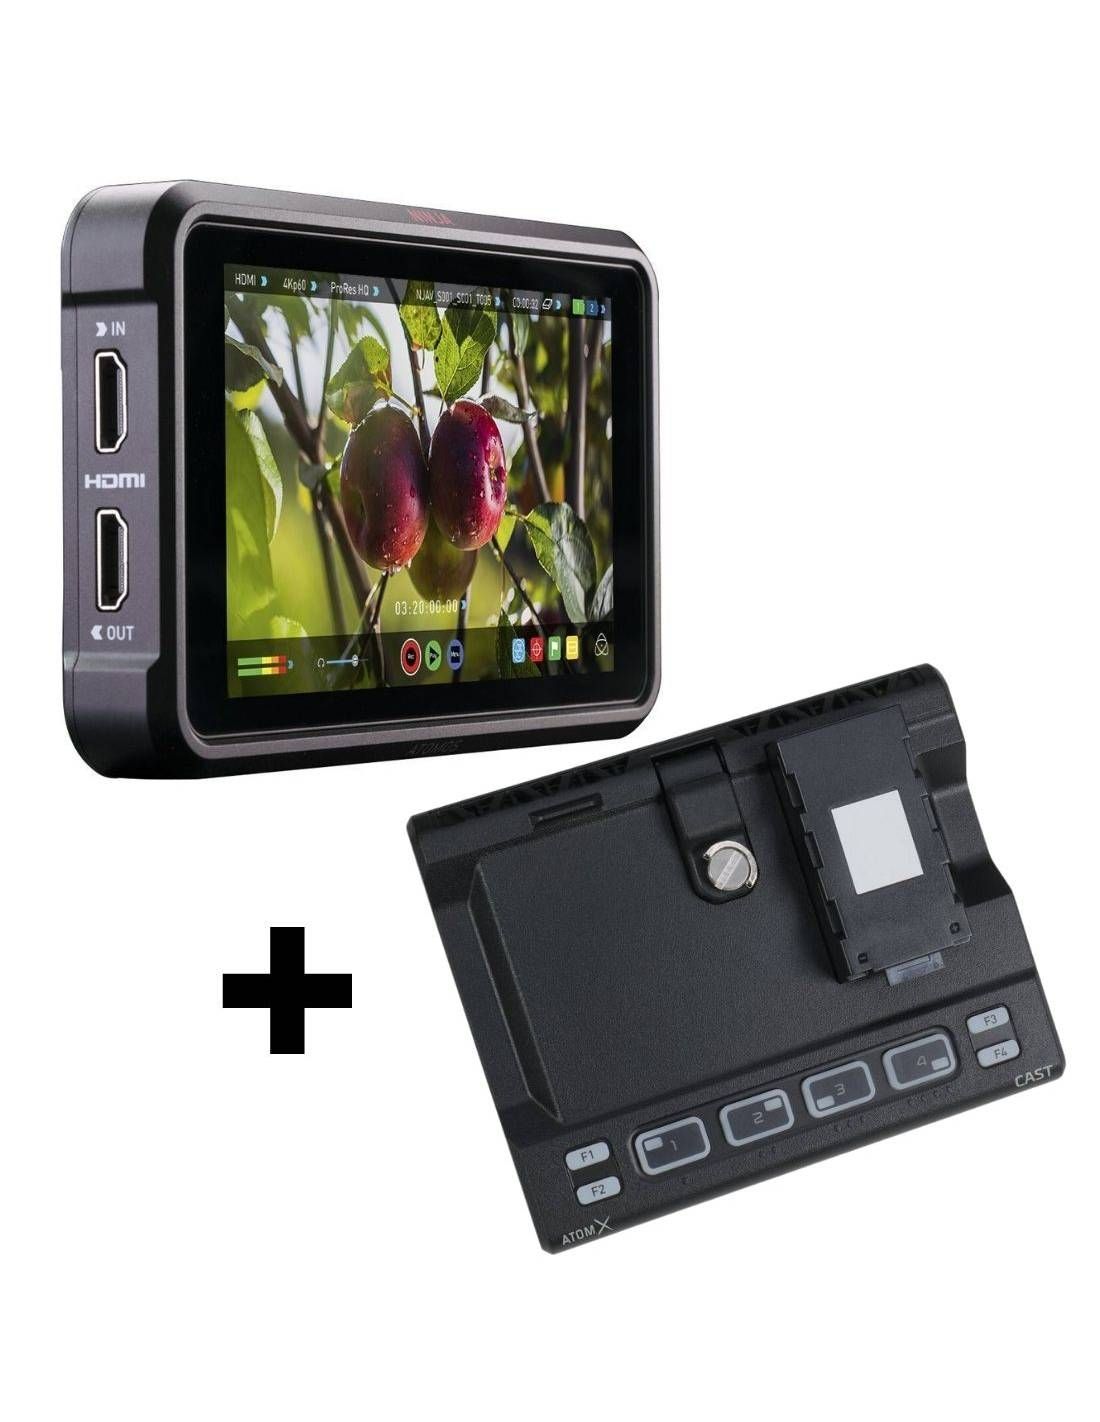 Monitor de grabación Atomos Ninja V 5 4K HDMI con kit de accesorios de 5